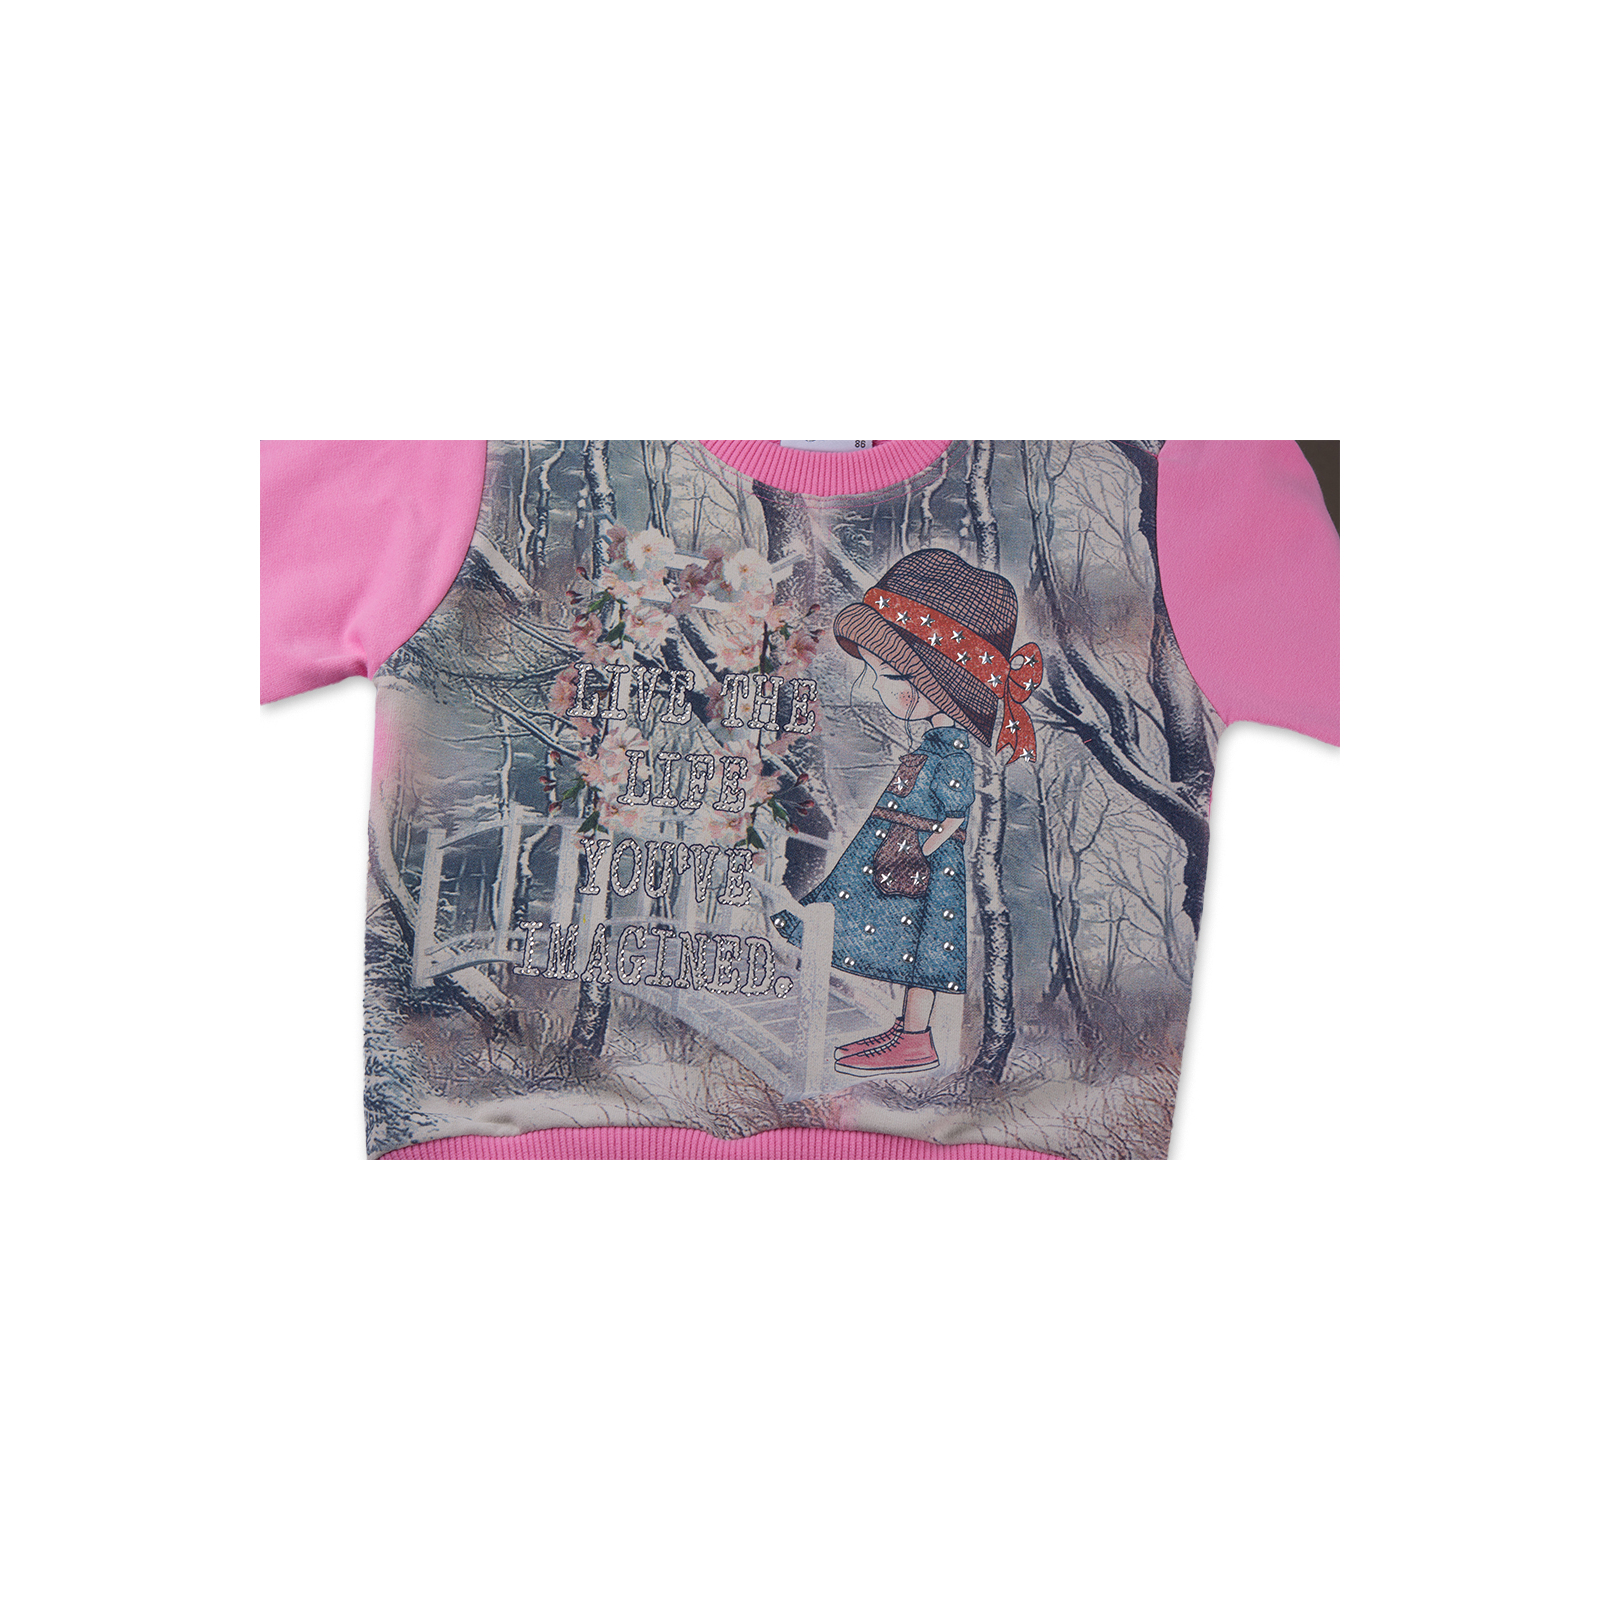 Набор детской одежды Breeze с девочкой и штанишками в цветочек (8075-98/G-pink) изображение 6